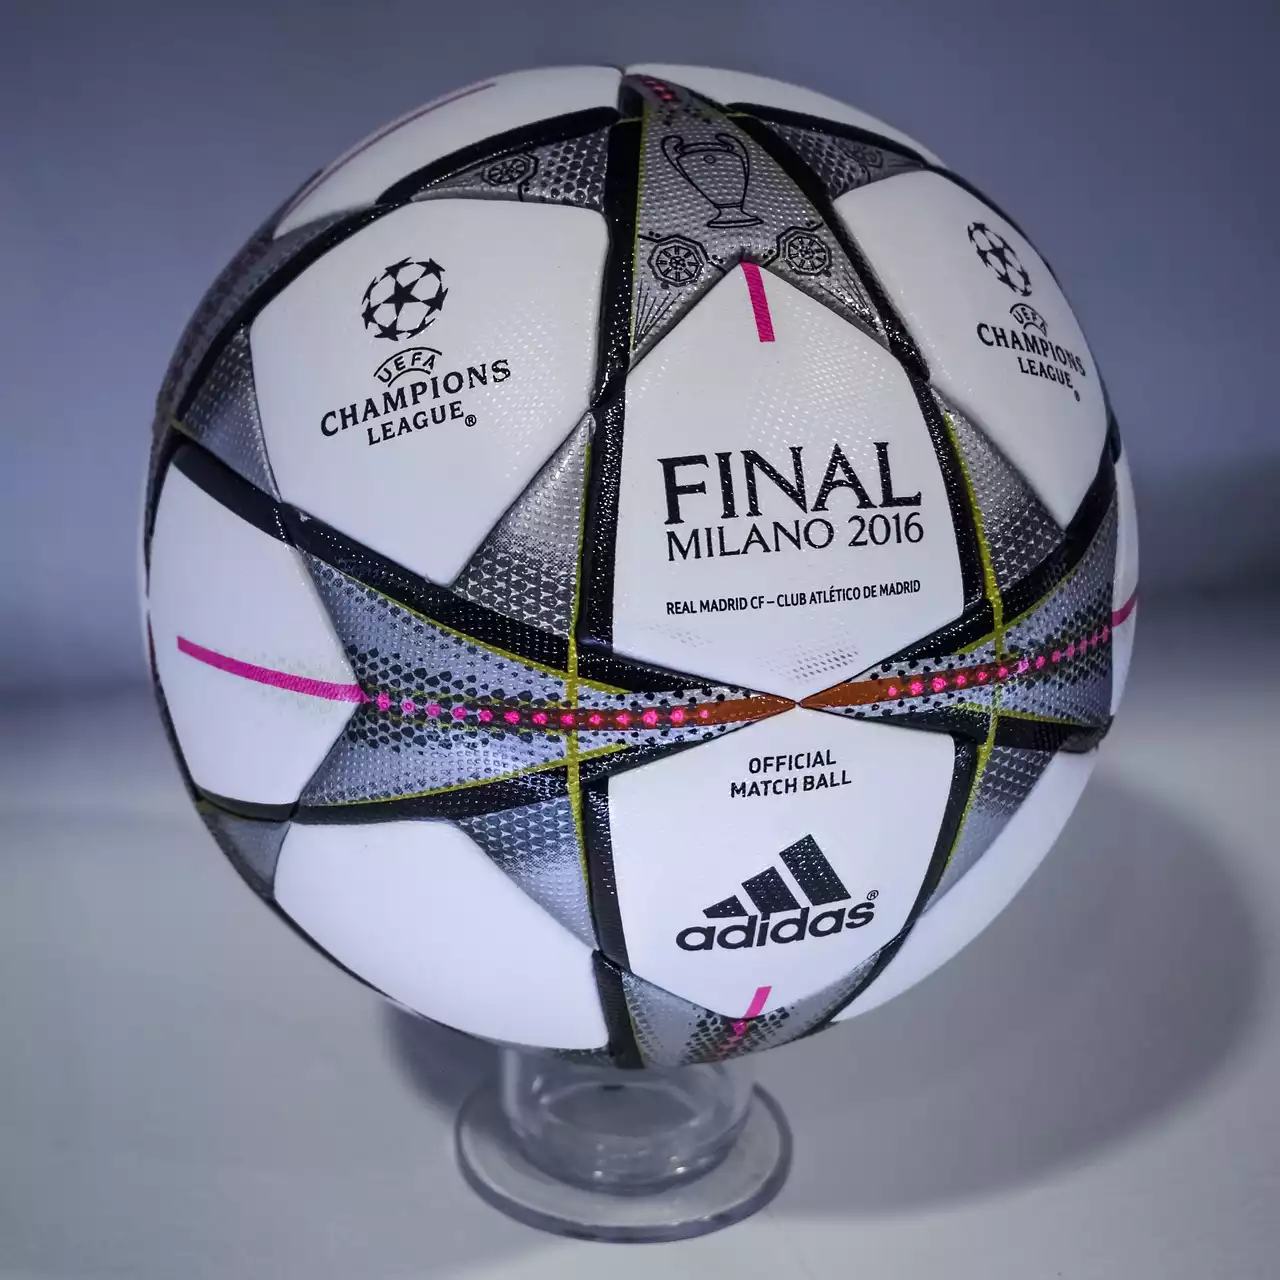 Ein Überblick über den UEFA Champions League-Wettbewerb